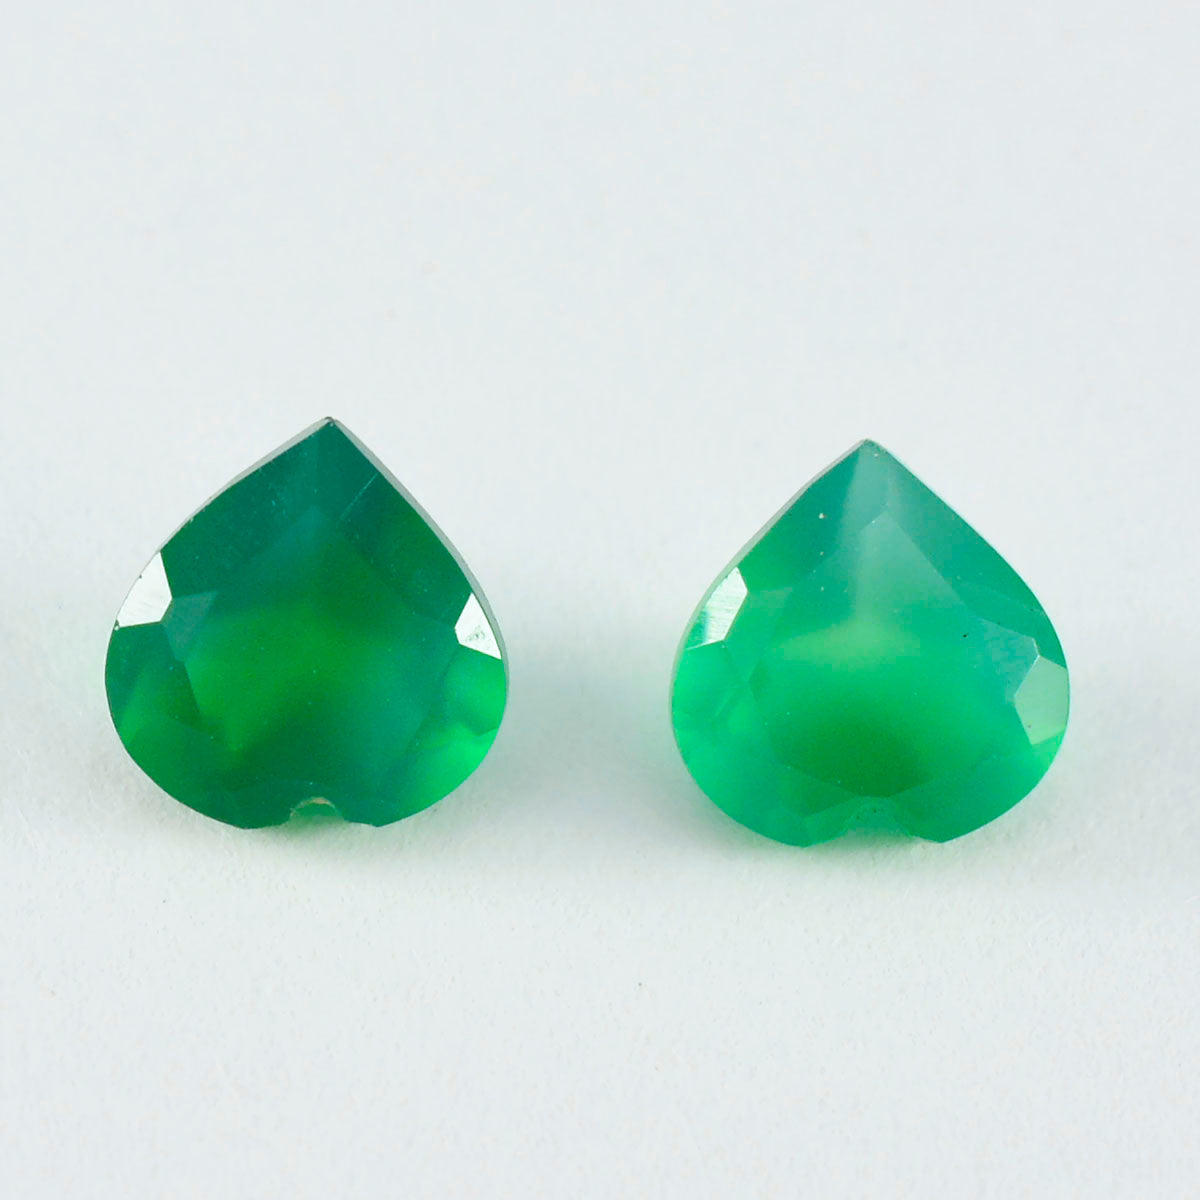 Riyogems 1 Stück echter grüner Onyx, facettiert, 8 x 8 mm, Herzform, gut aussehender Qualitätsstein